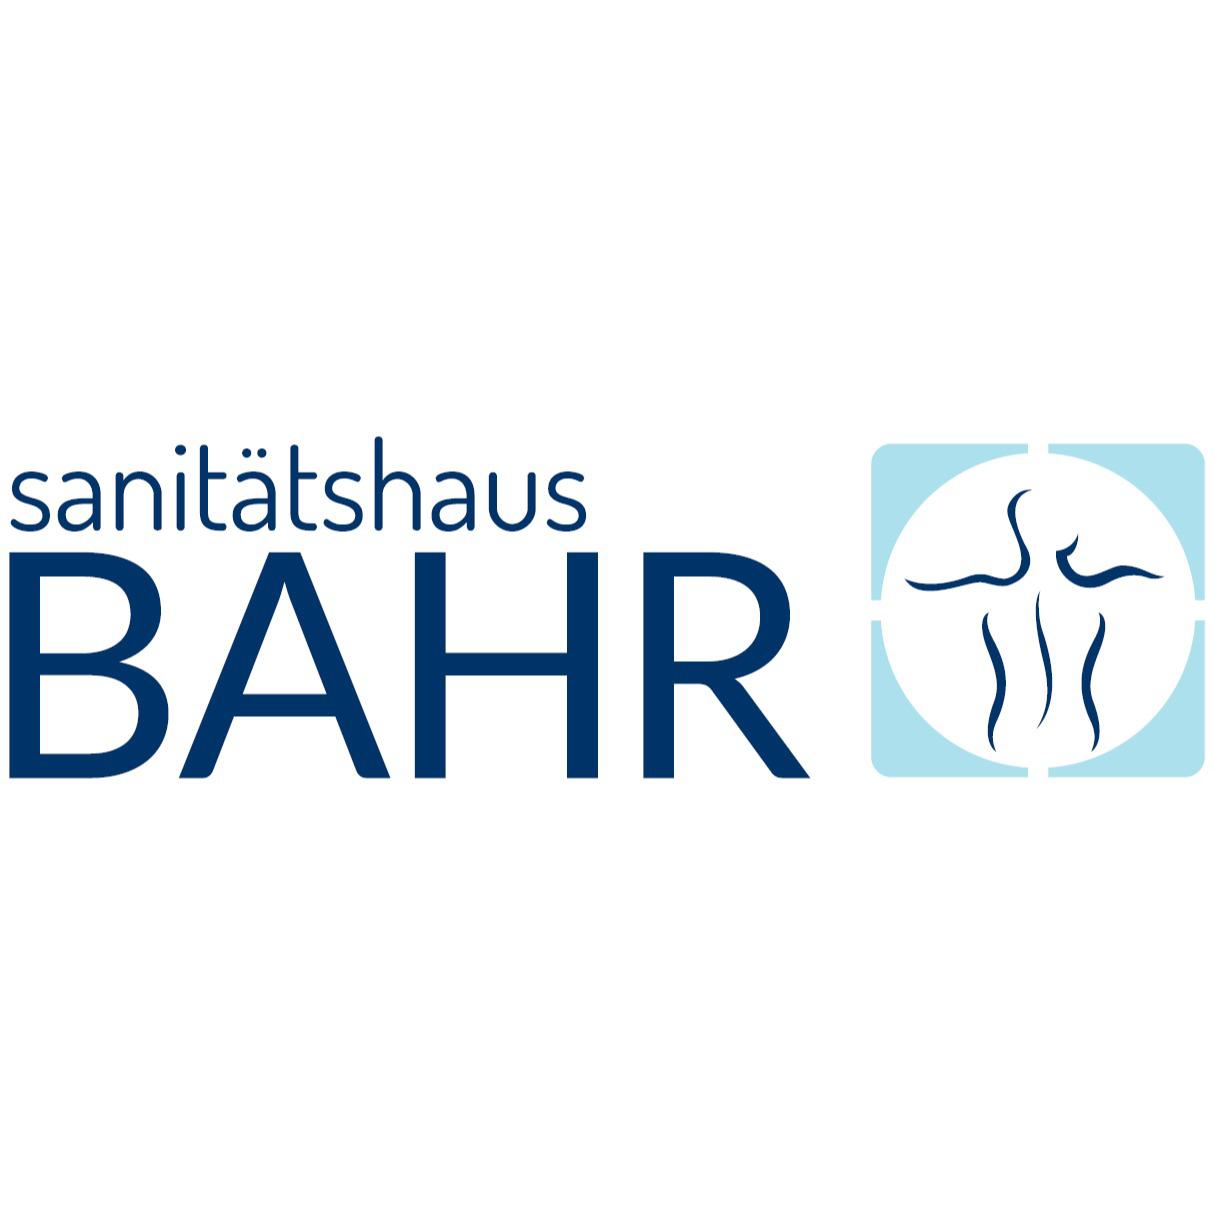 Sanitätshaus BAHR in REWE-Center in Kiel - Logo